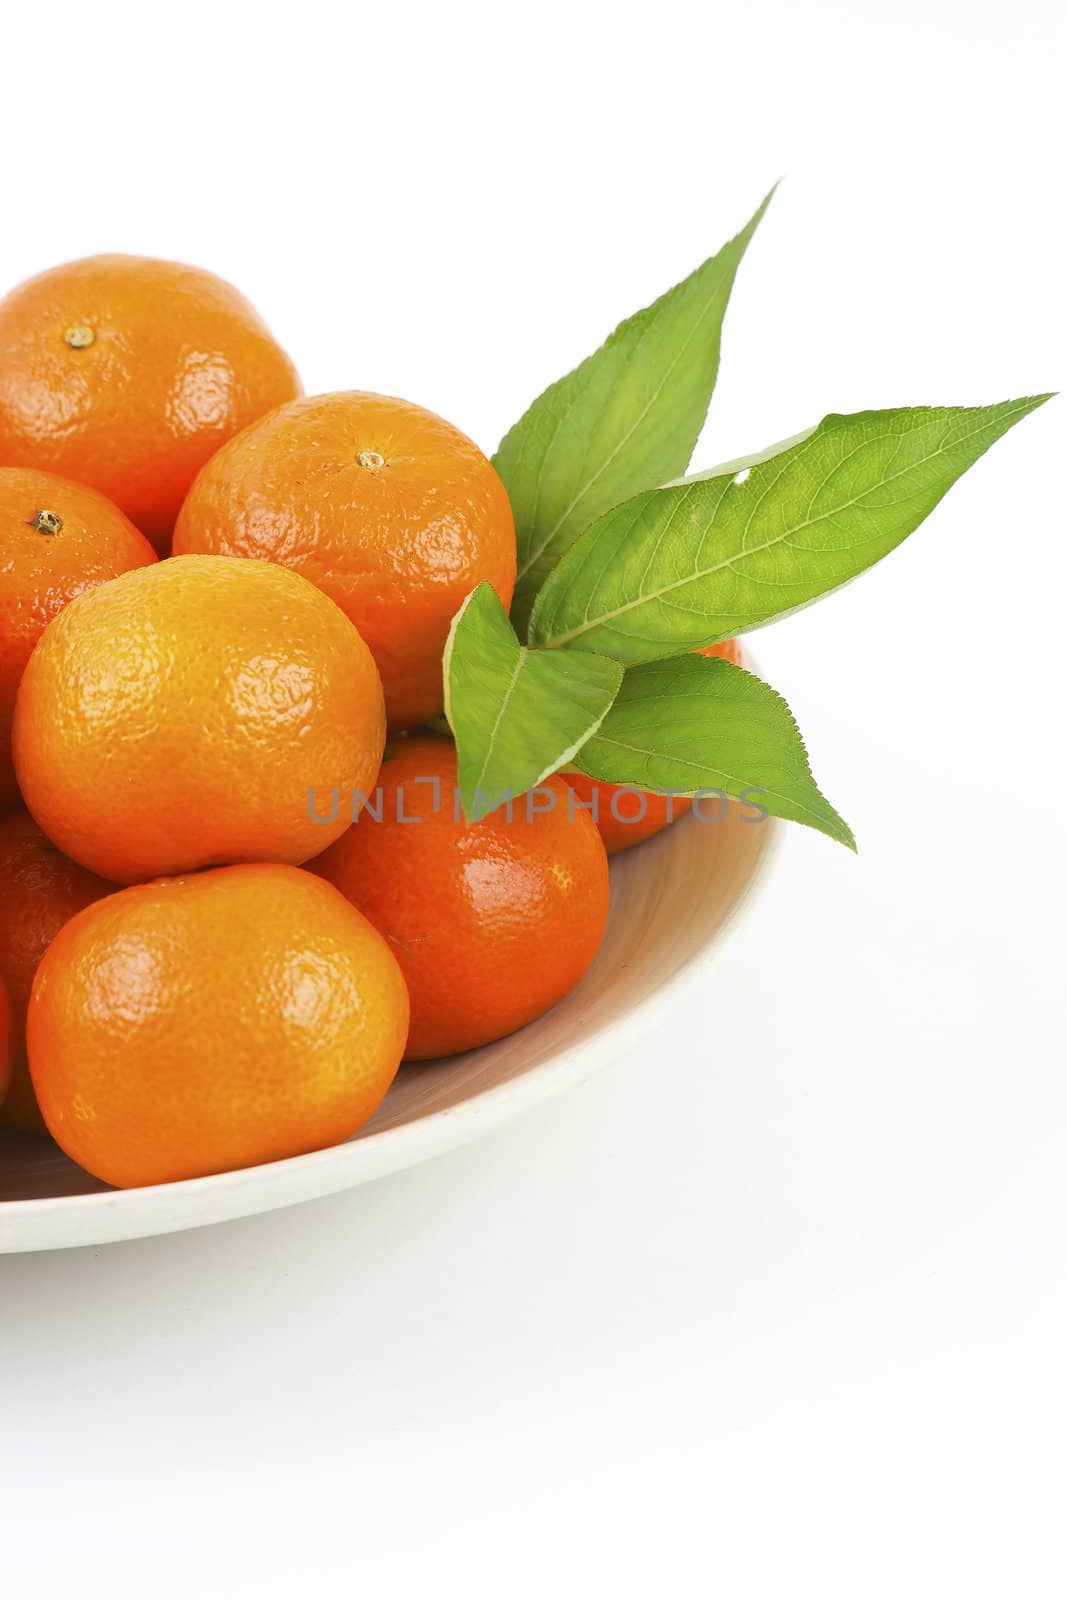 fresh tangerines by miradrozdowski